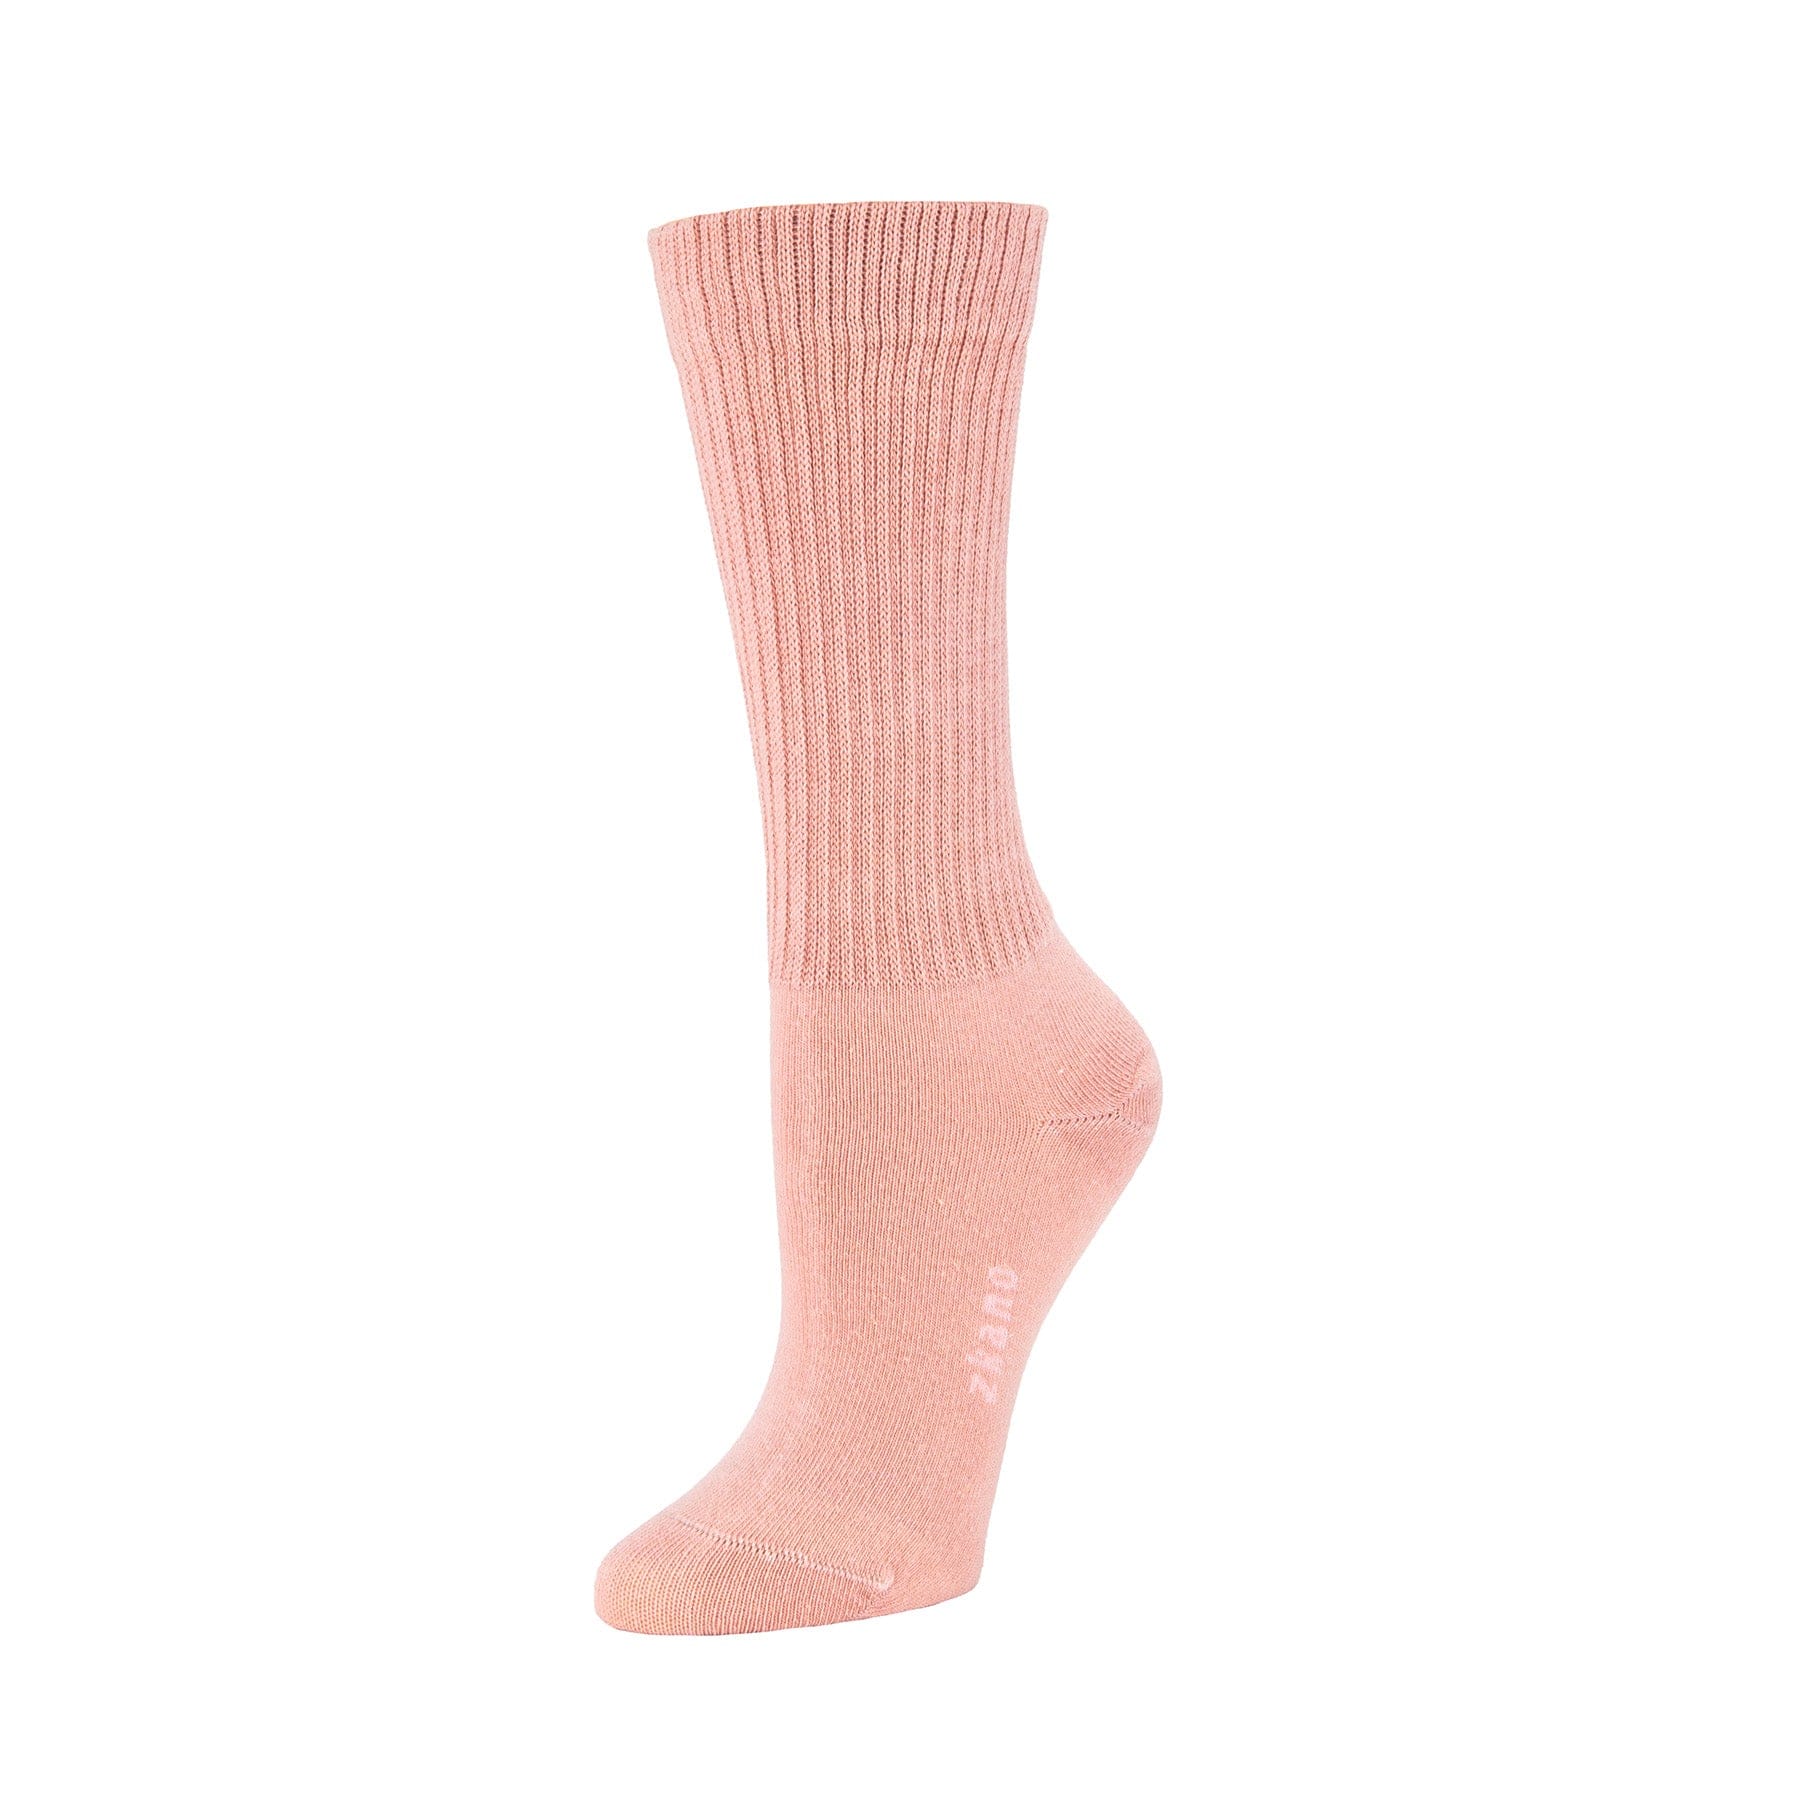 Rib Knit - Organic Cotton Crew Socks - Desert Rose – zkano socks